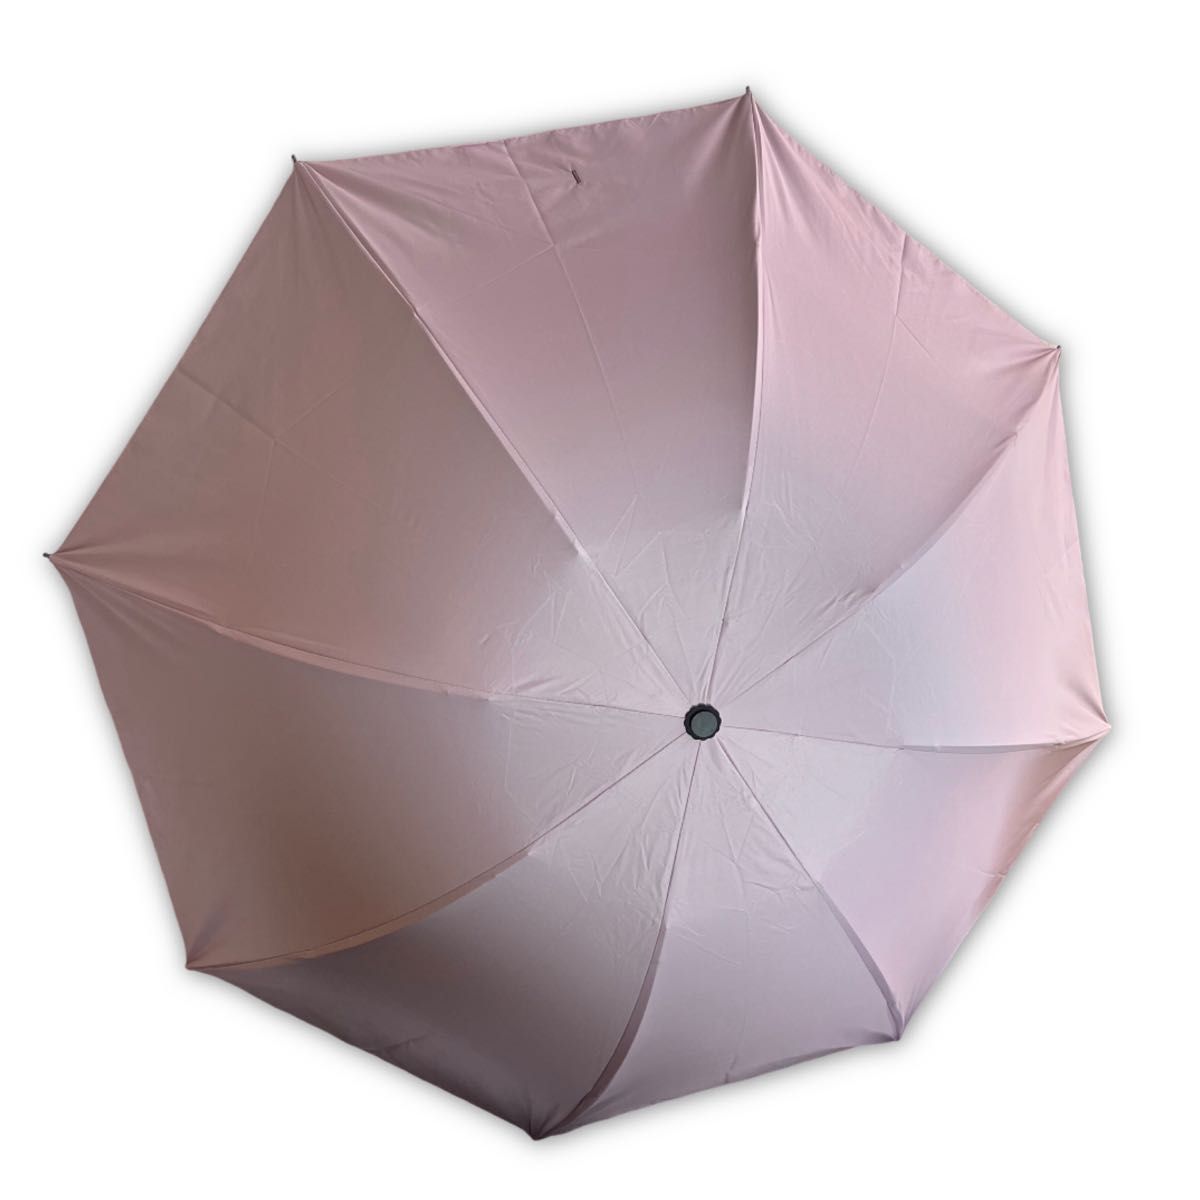 【即日発送】【お買い得】折り畳み傘 晴雨兼用 日傘 雨傘 日焼け止め 紫外線防止 軽量 梅雨対策 折りたたみ傘 ピンク